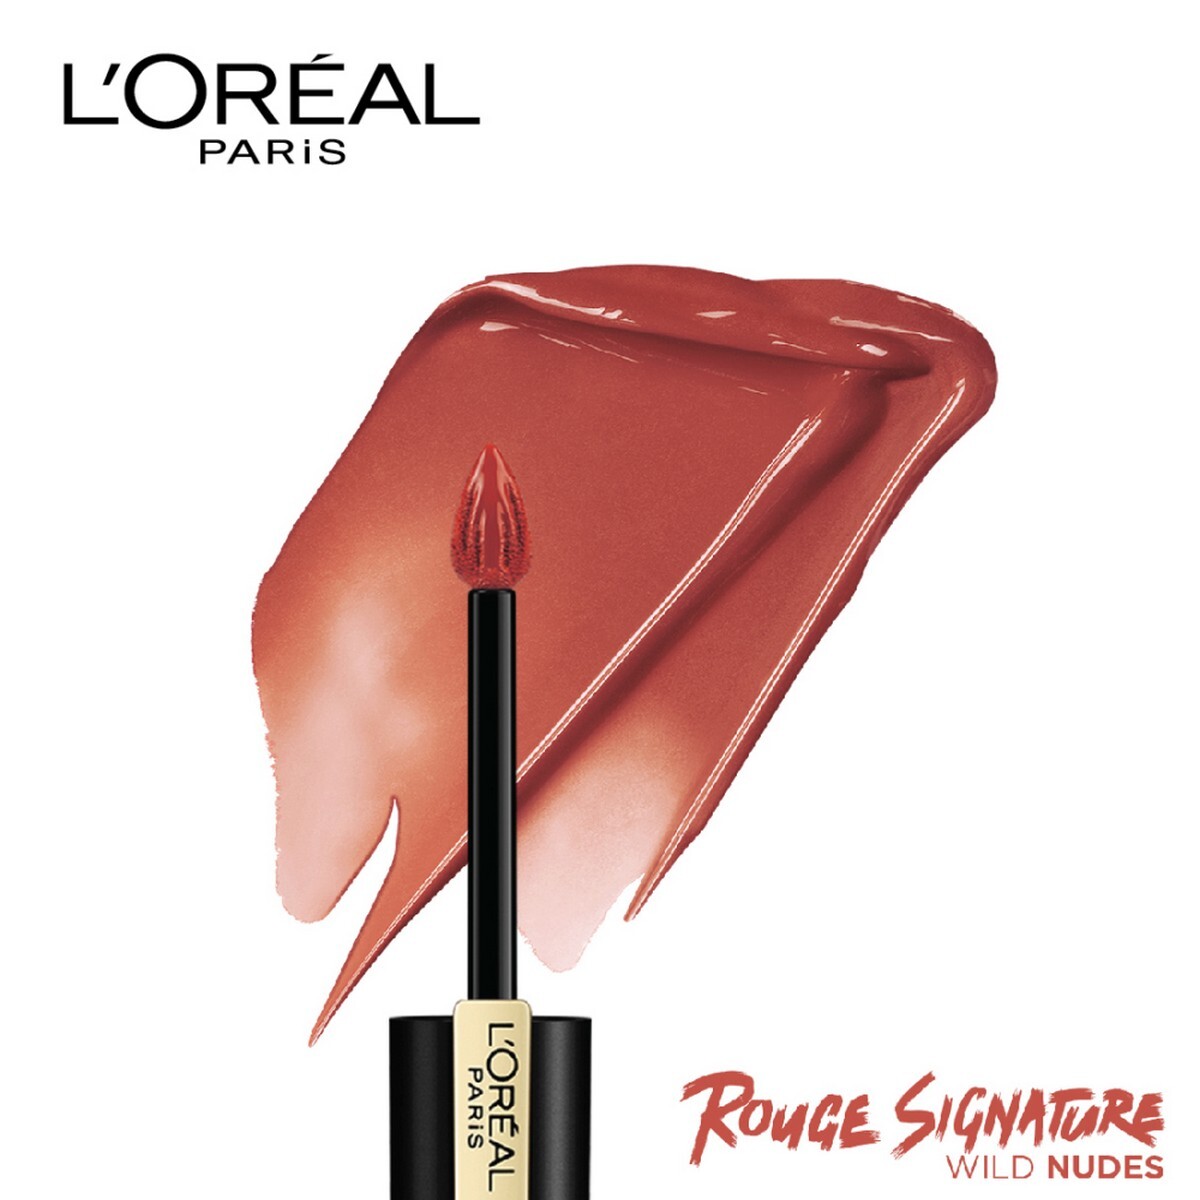 L'Oreal Paris Rouge Signature Matte Liquid Lipstick, 150 I Dominate